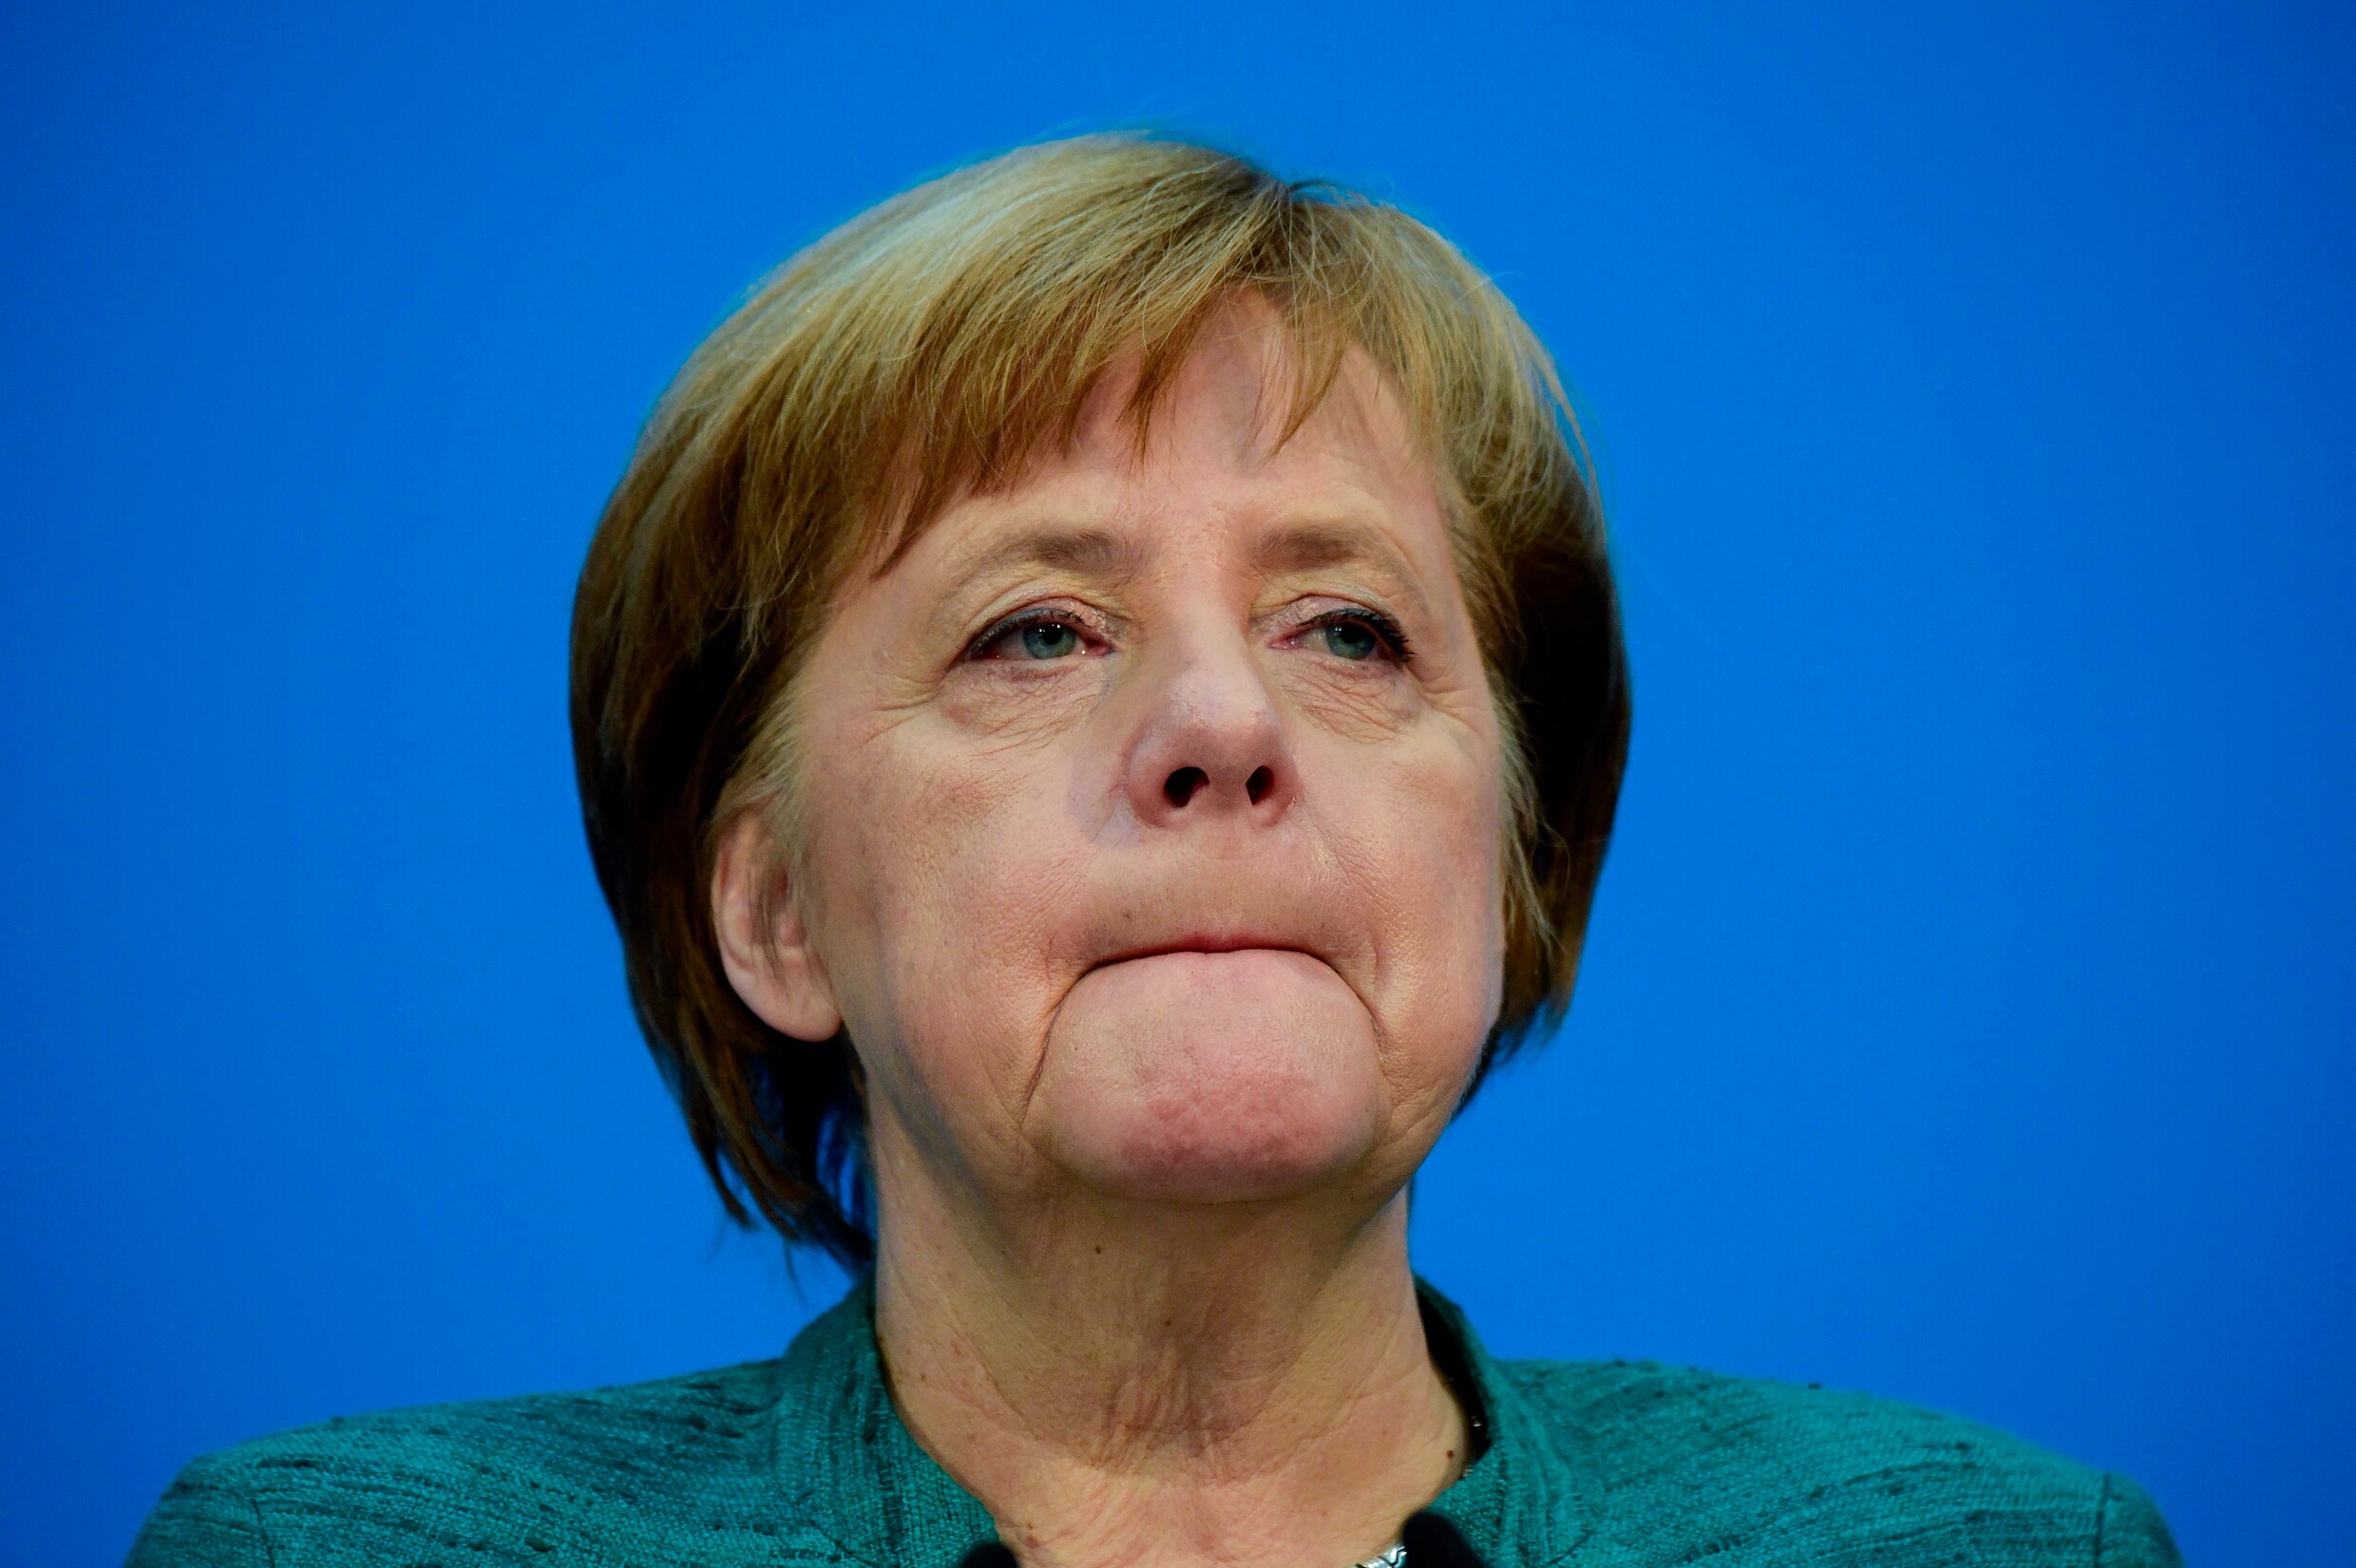 Partijleden dringen aan op ontslag, maar Angela Merkel "blijft doorgaan tot het einde" als bondskanselier